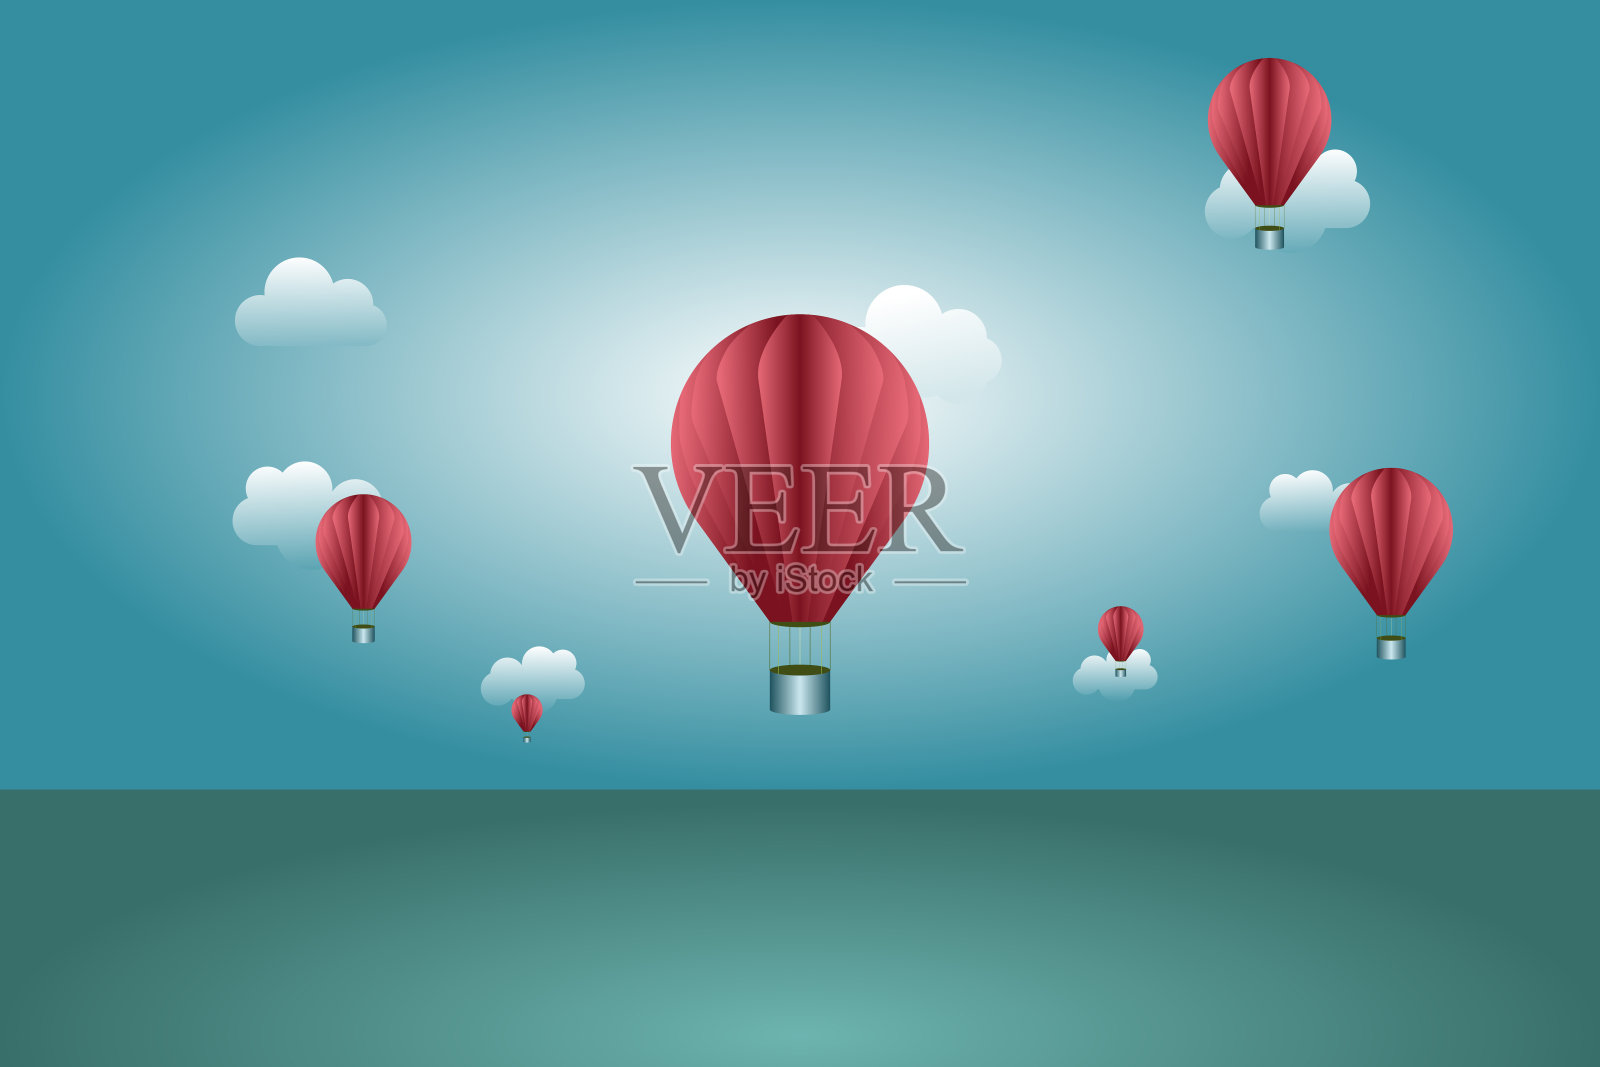 蓝色的天空中漂浮着红色的气球。插画图片素材